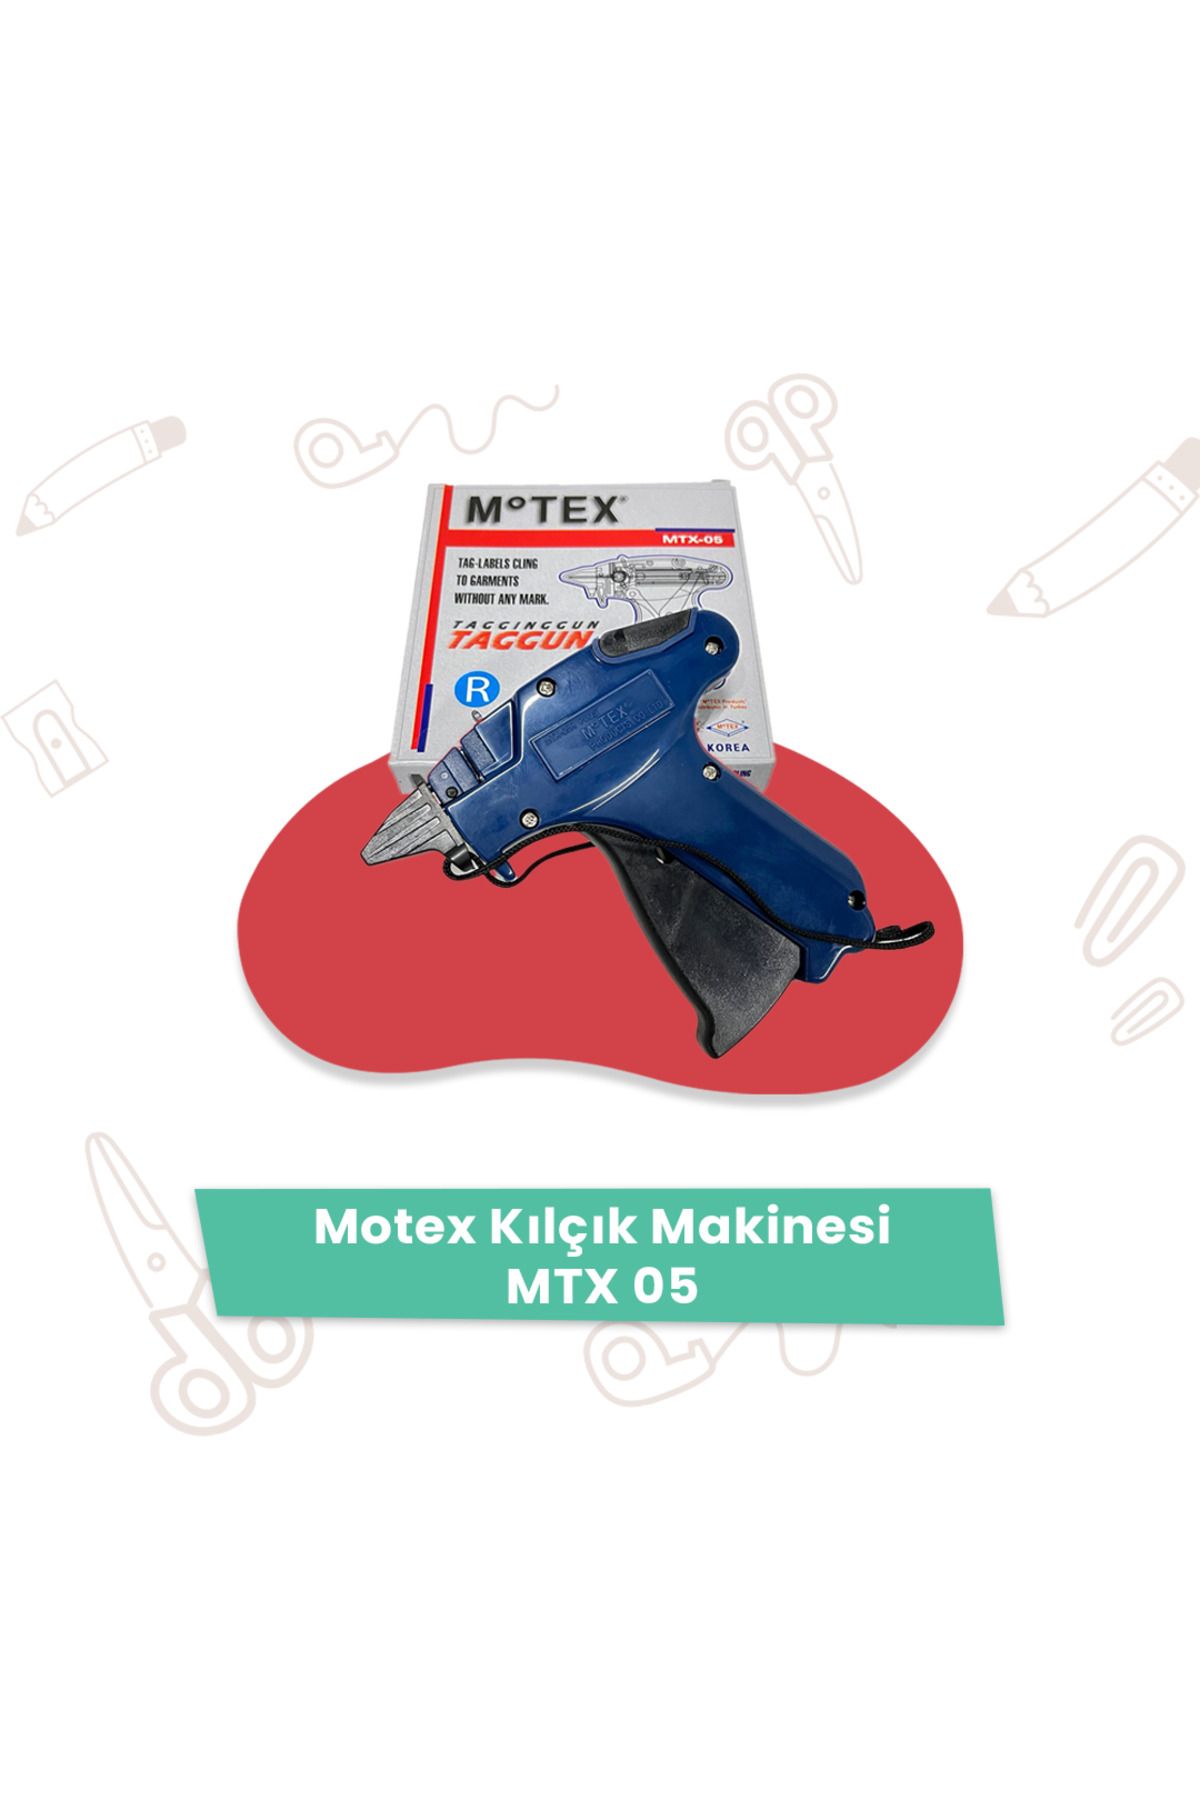 Motex Kılçık Makinesi MTX 05